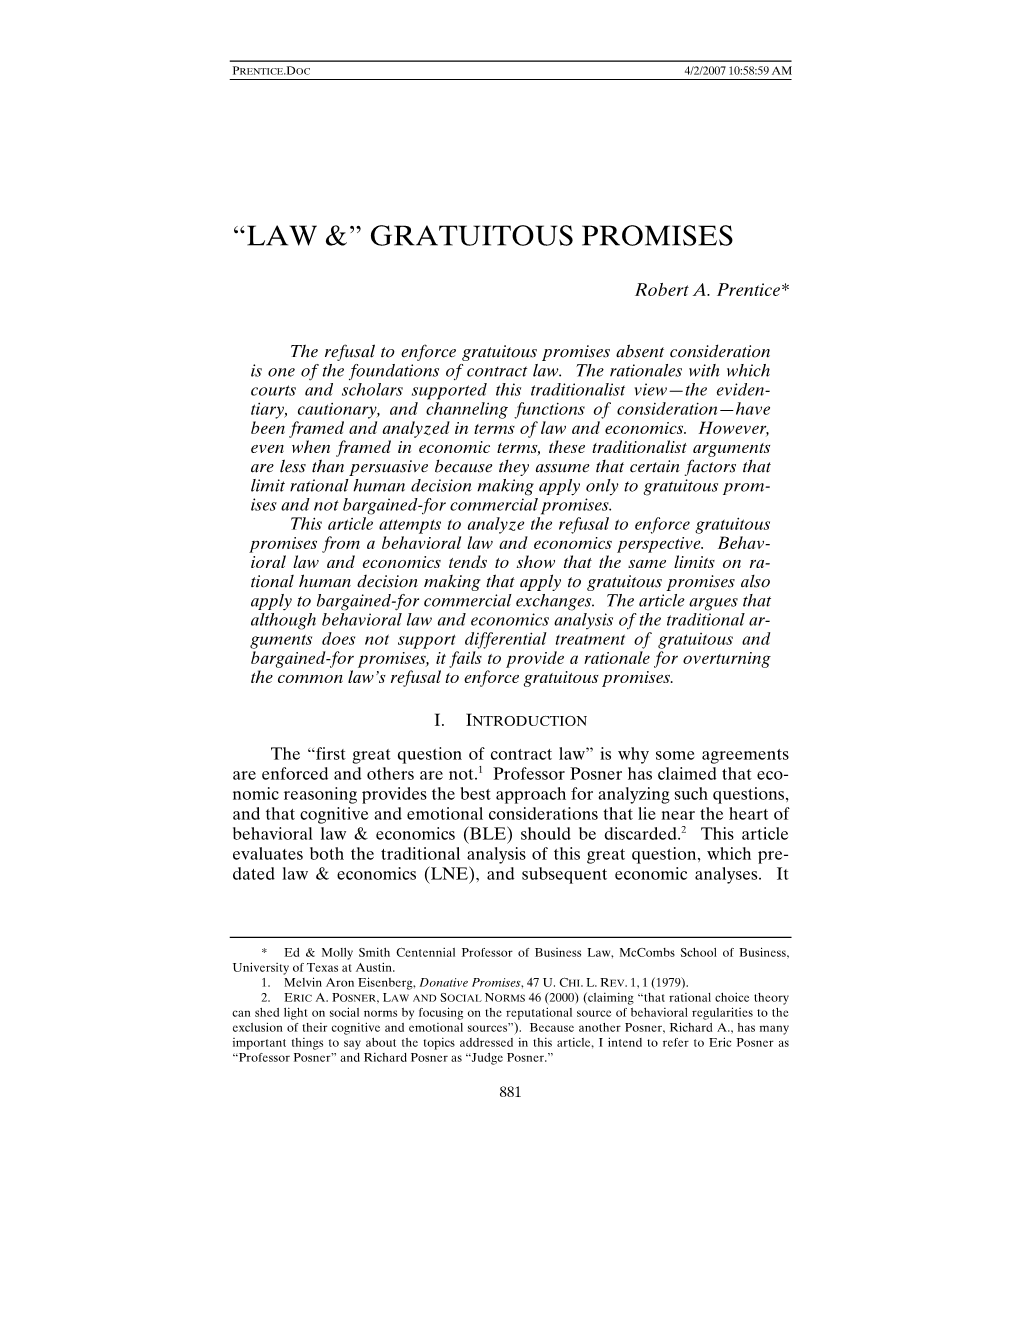 “Law &” Gratuitous Promises